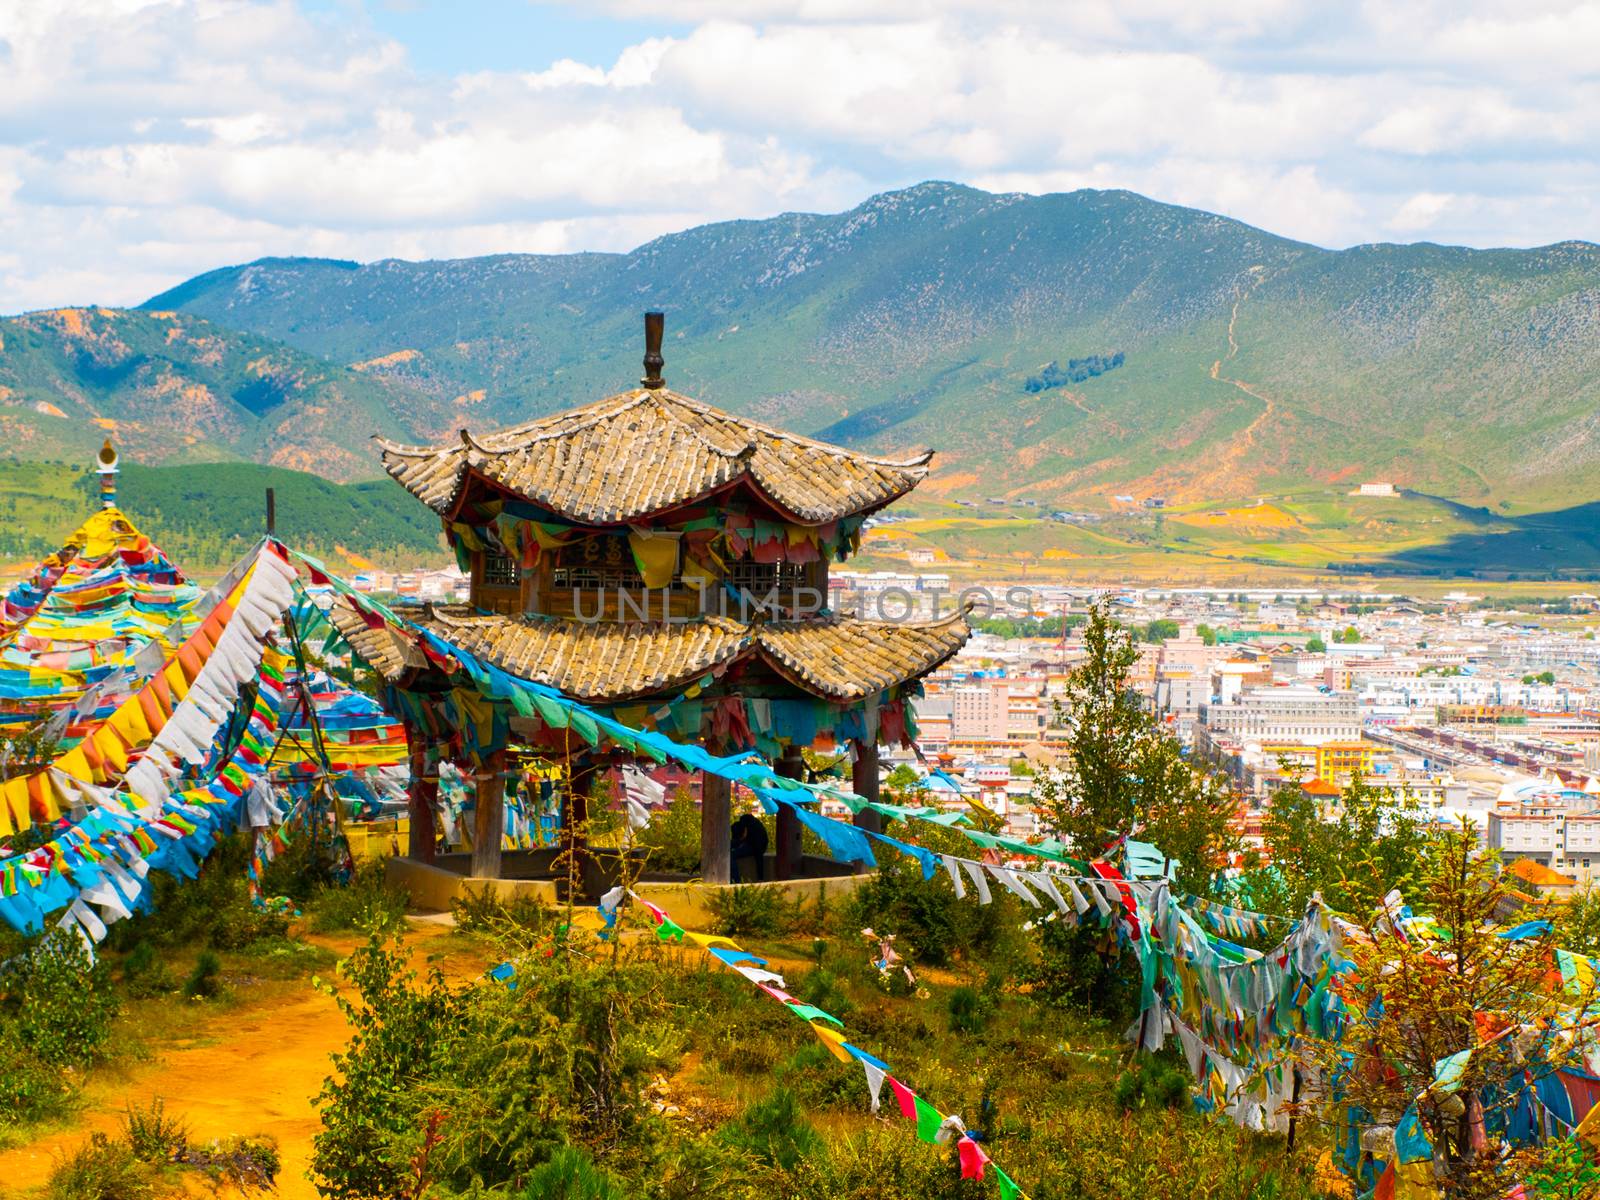 Tibetan gazebo above Shangri-La or Xianggelila, formerly Zhongdian, mountain city in northwestern Yunnan province. The seat of the Diqing Tibetan Autonomous Prefecture, China.